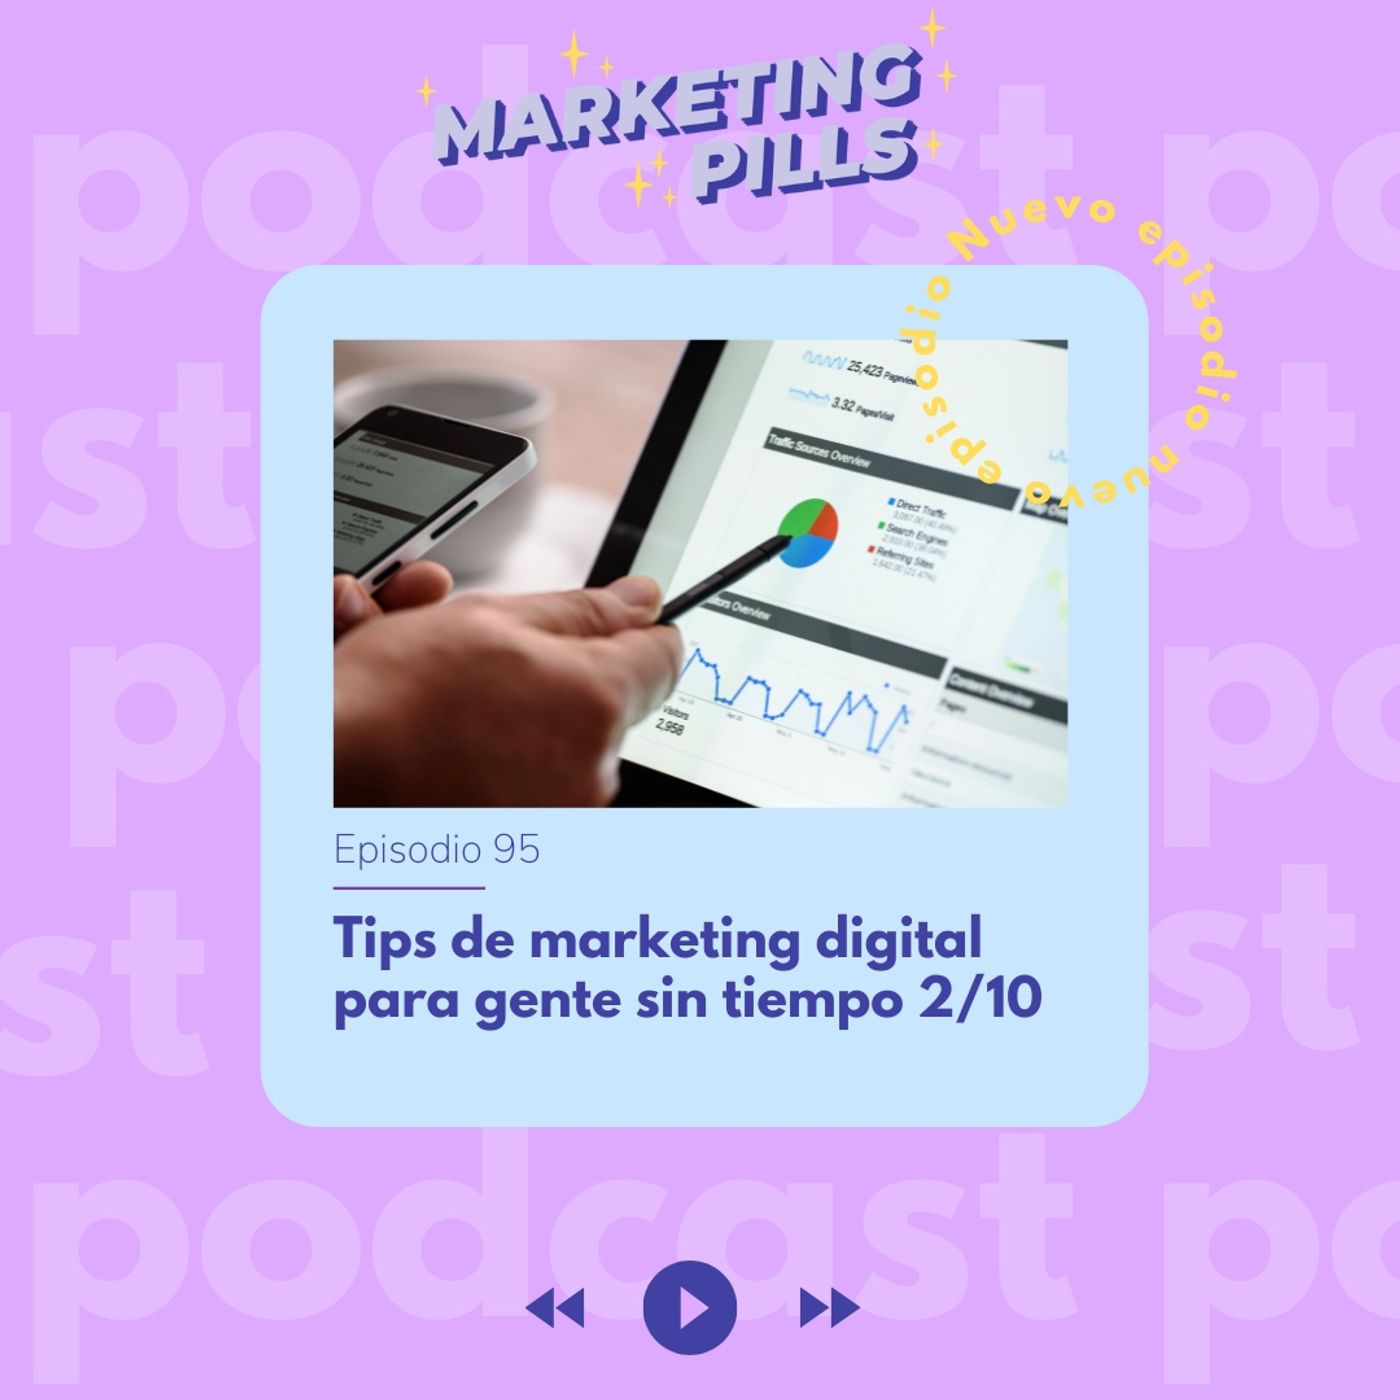 ⚡Episodio 95 - Tips de marketing digital para gente sin tiempo 2/10